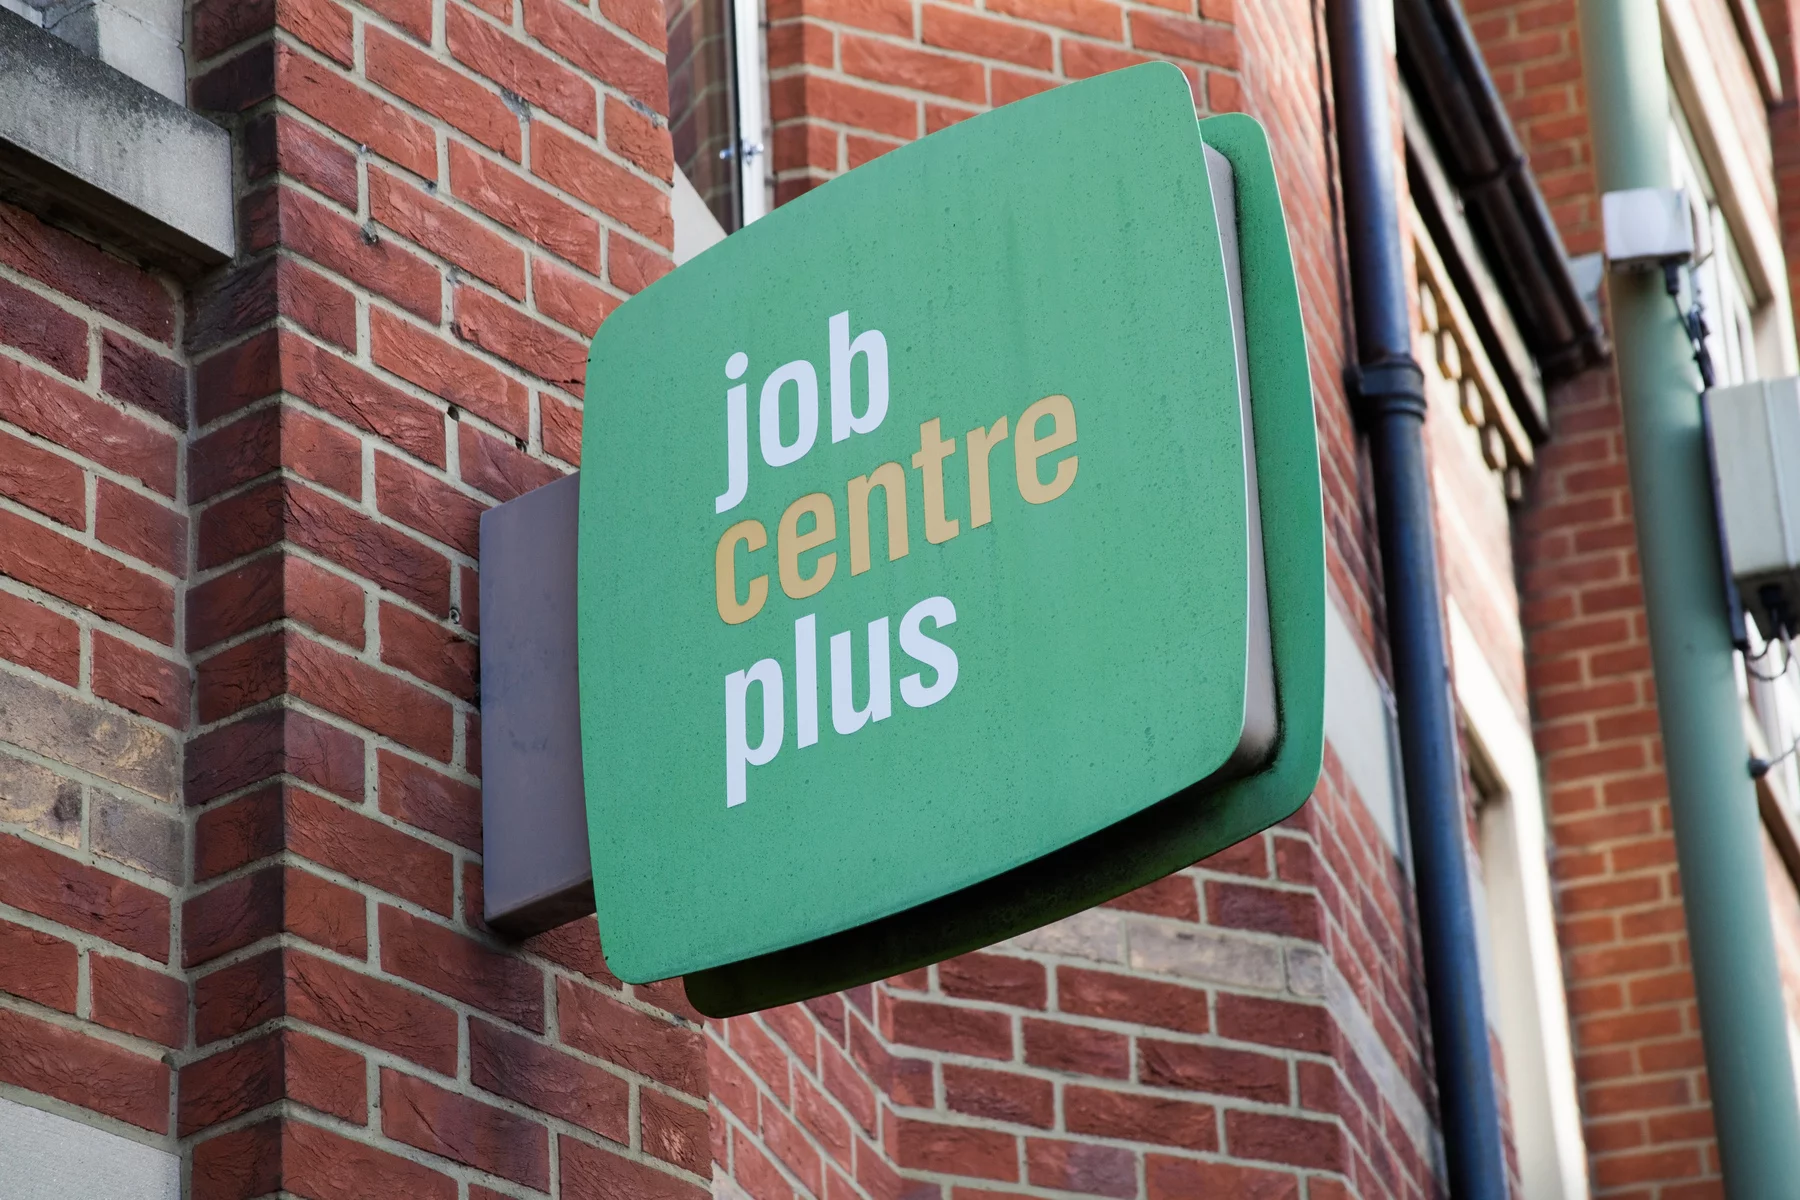 Job Centre Plus location